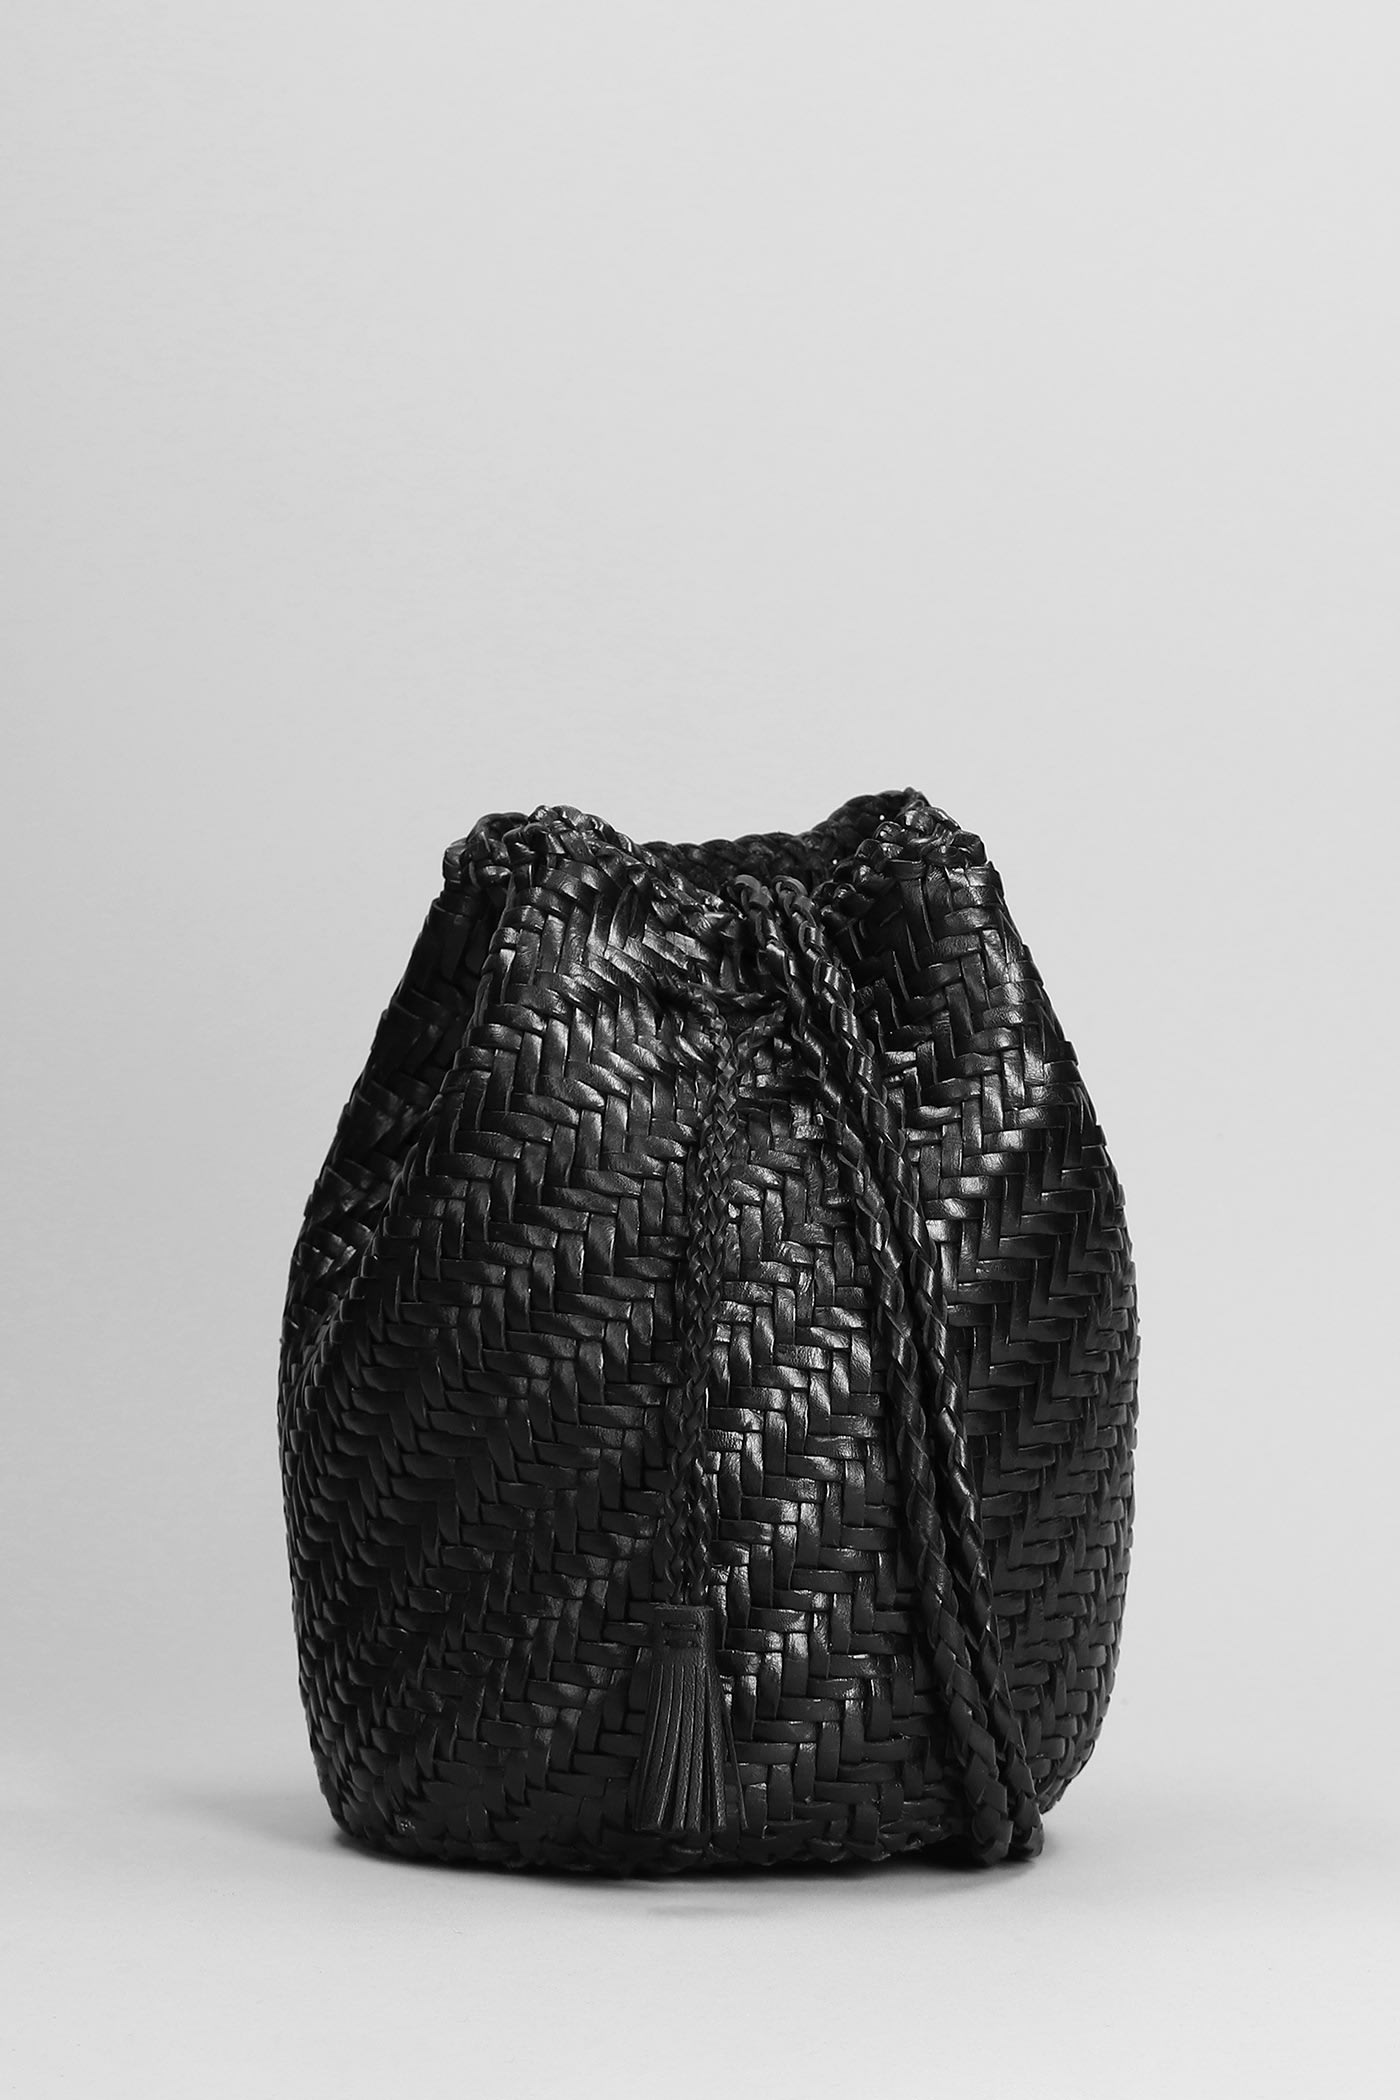 Pompom Double Shoulder Bag In Black Leather